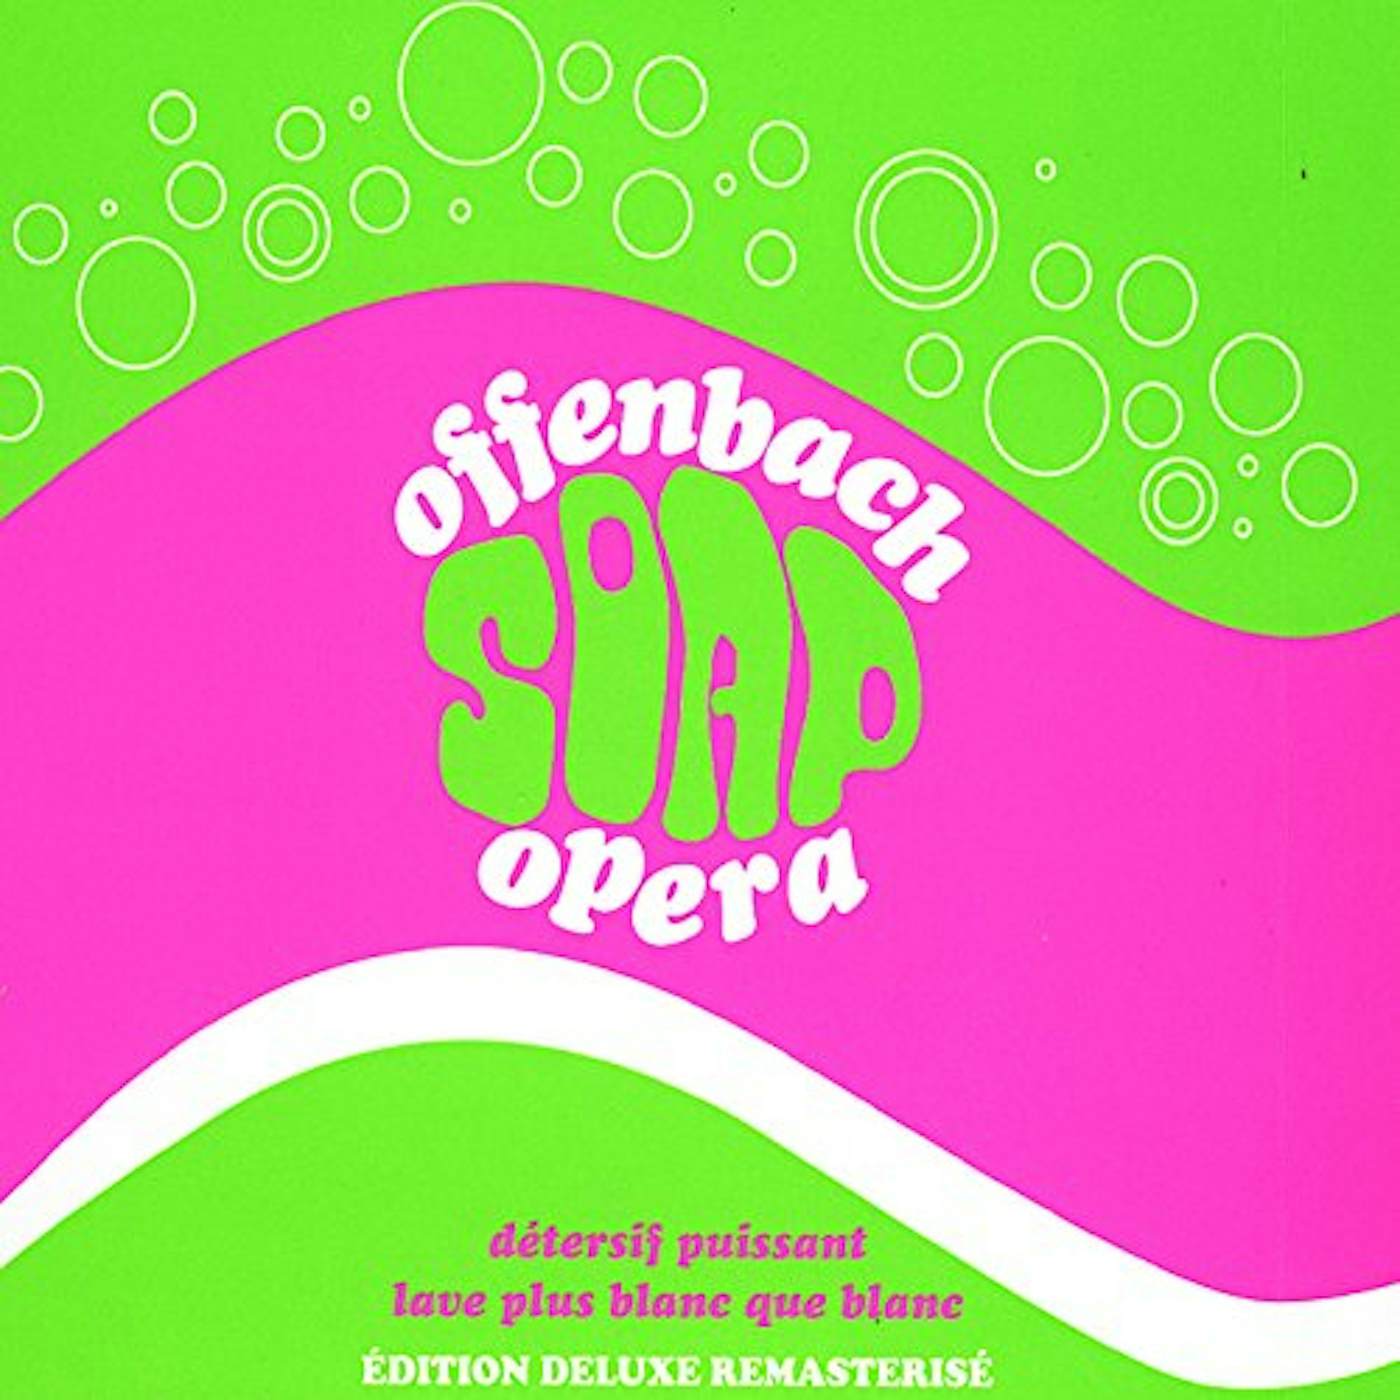 Offenbach SOAP OPERA CD